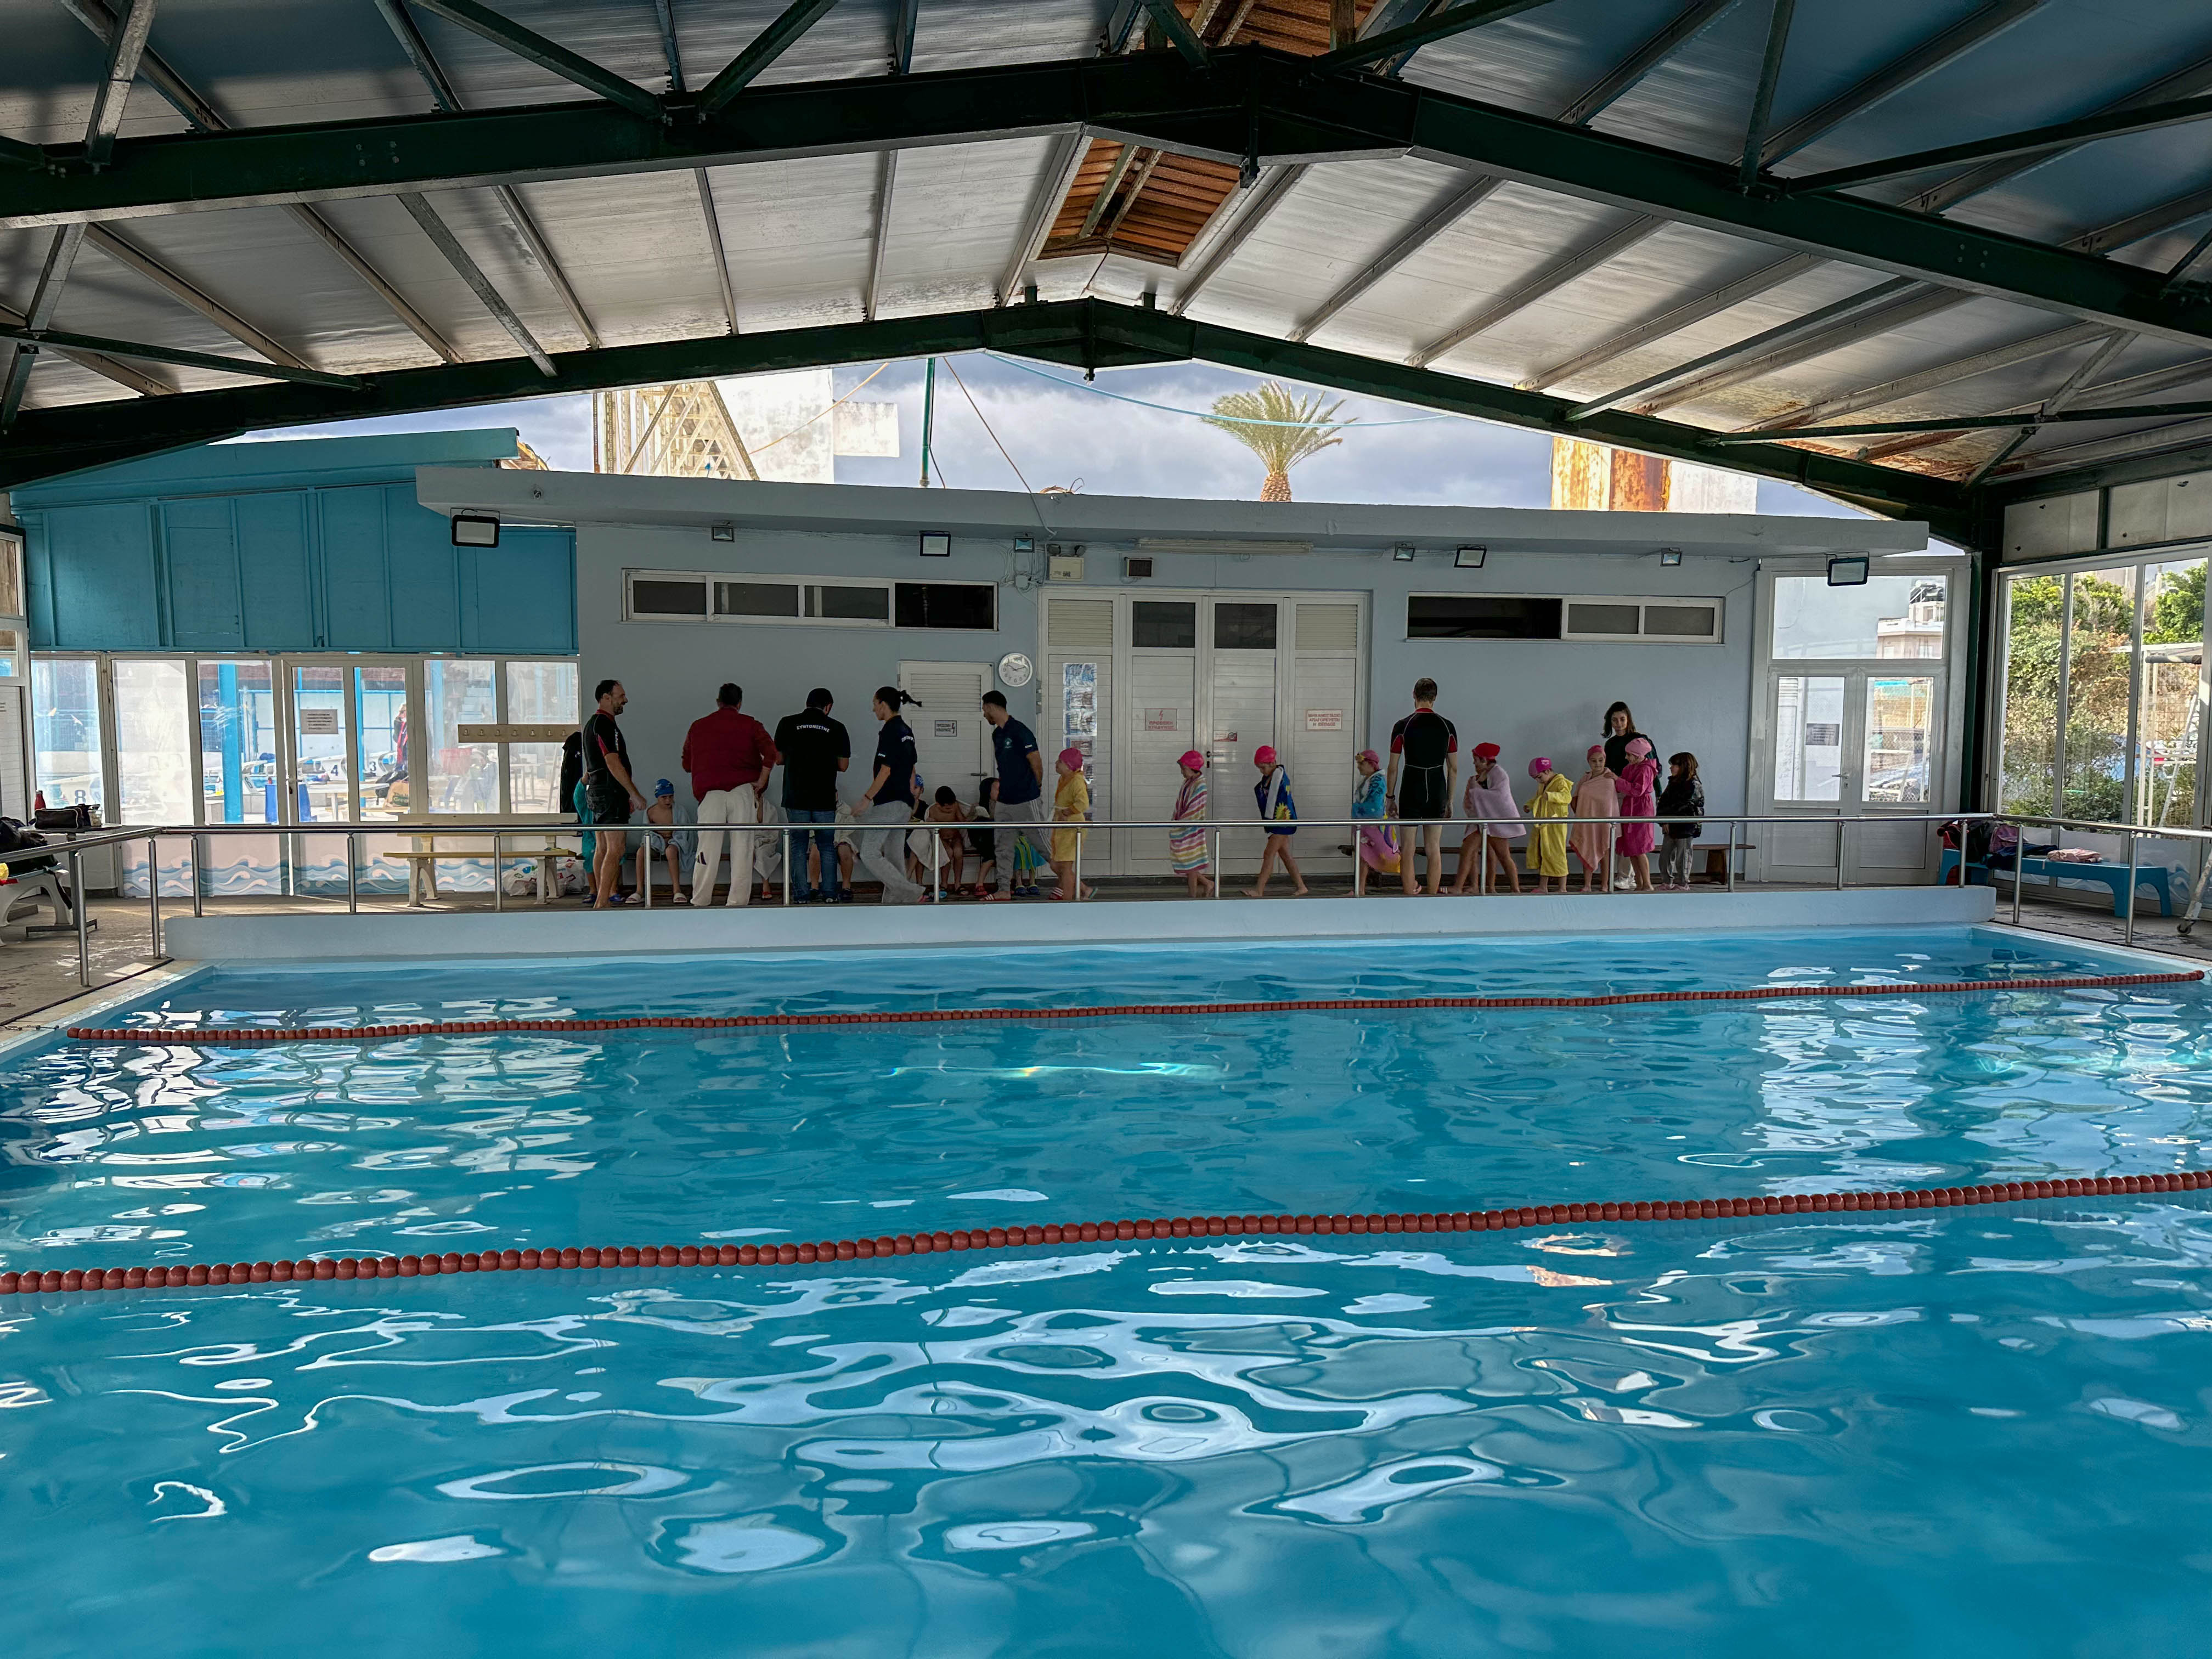 Με μεγάλη επιτυχία πραγματοποιήθηκε η έναρξη των μαθημάτων κολύμβησης της Γ΄ τάξης των δημοτικών σχολείων του Ν. Ηρακλείου